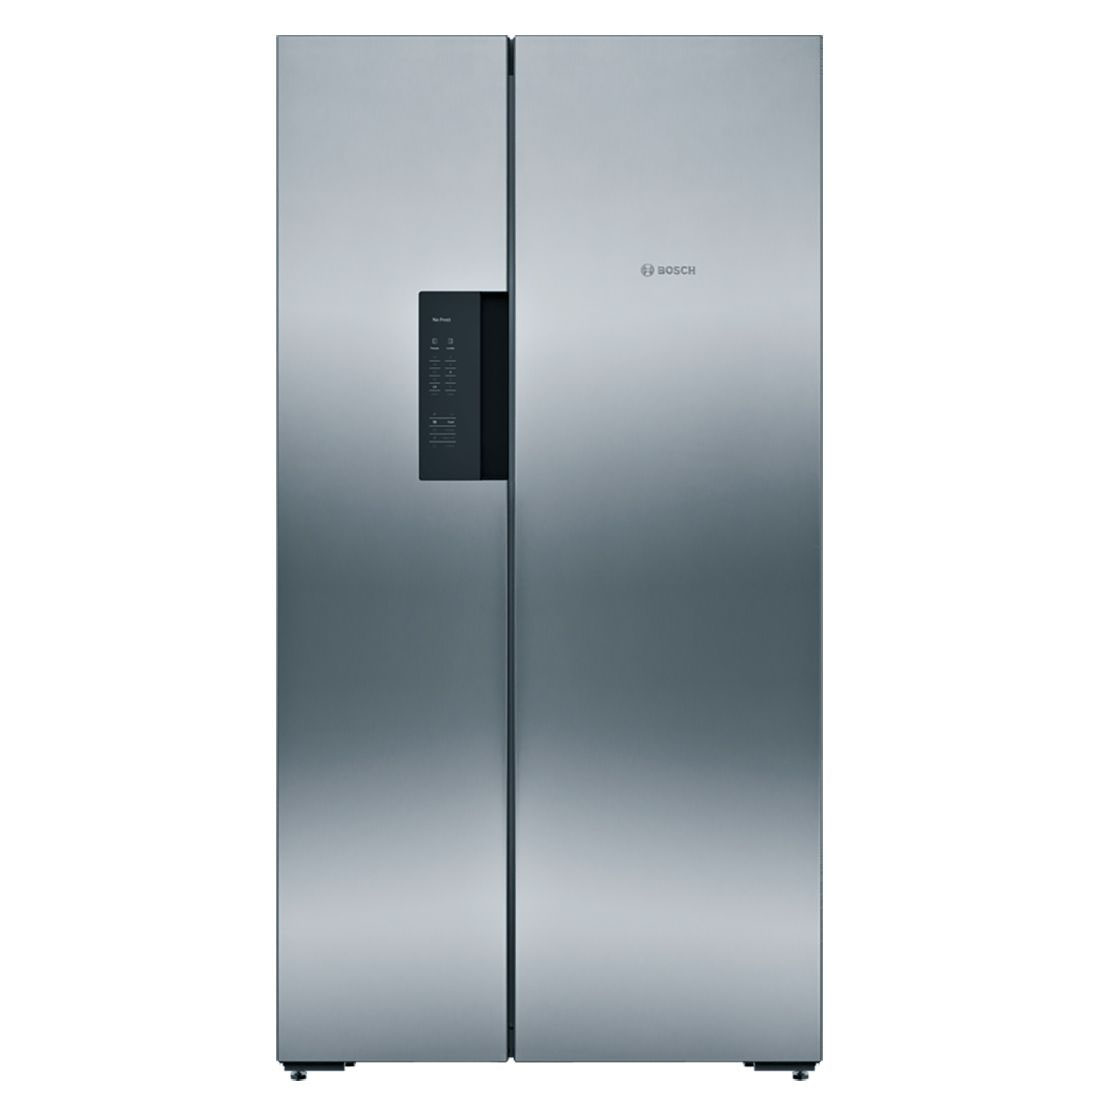 Réfrigérateur américain side by side Samsung KAN92VI35